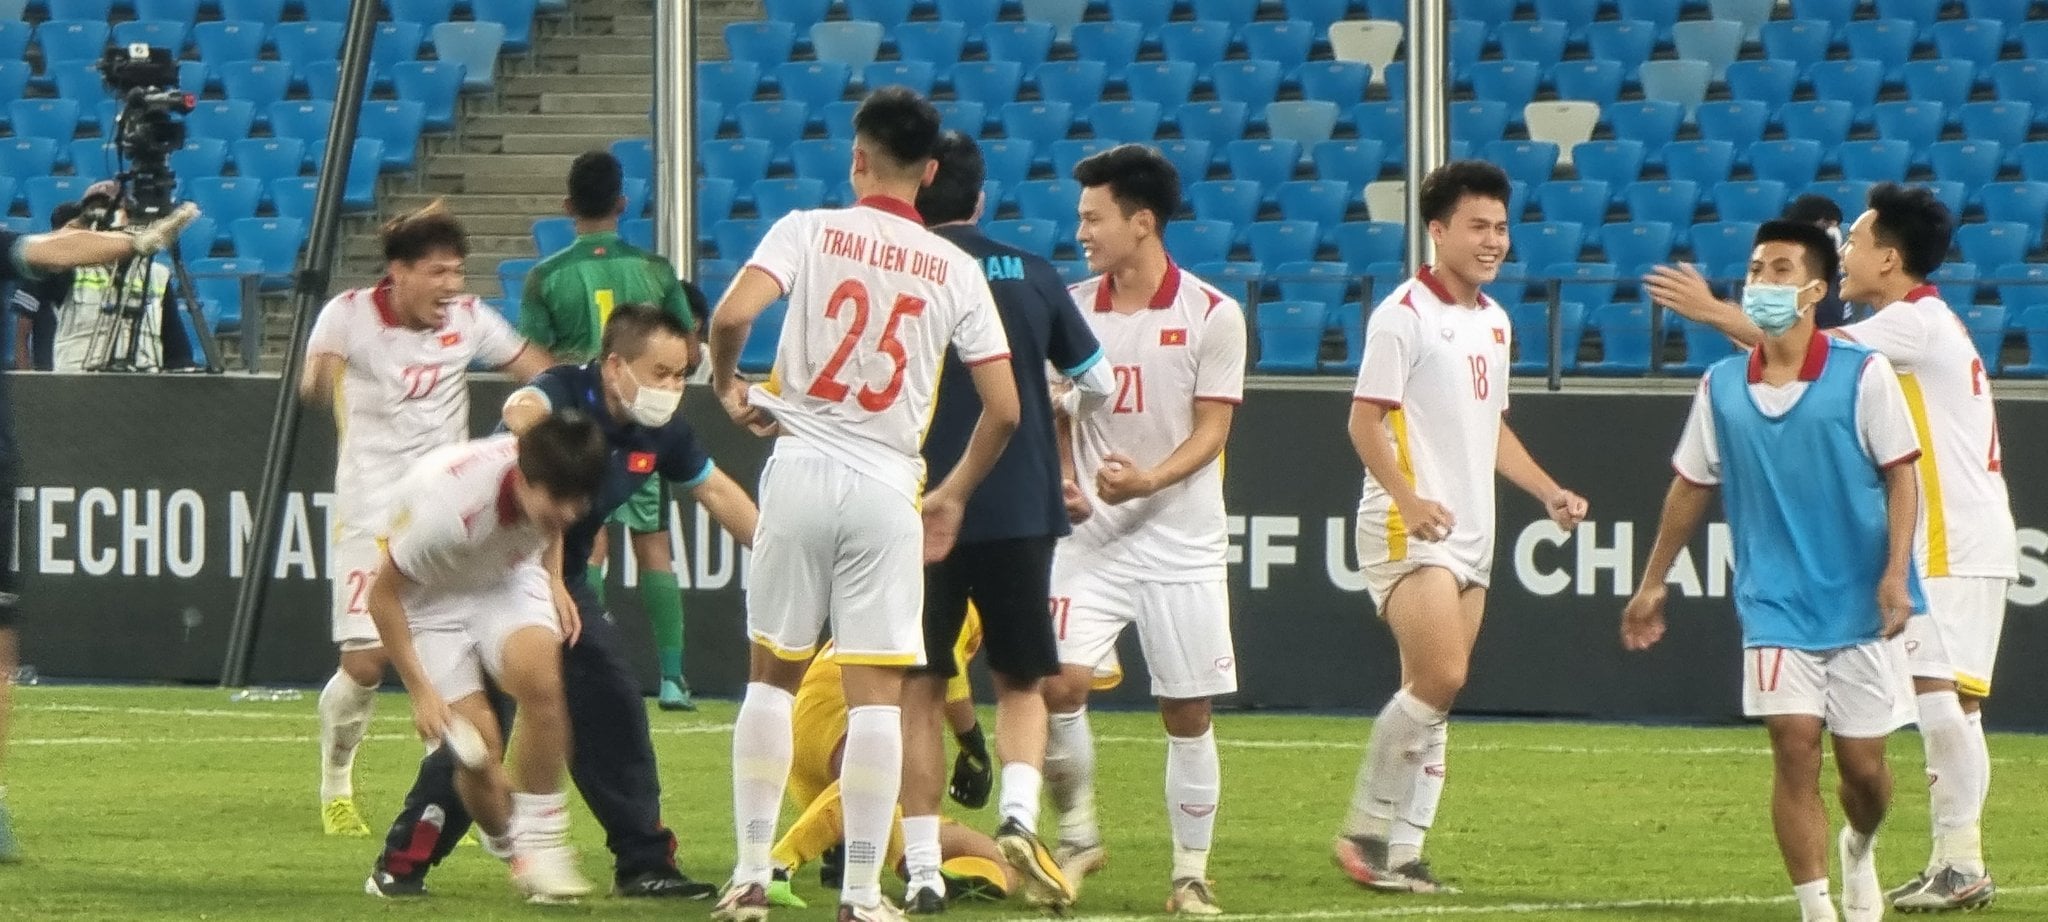 CĐM vỡ oà sau chiến thắng nghẹt thở của U23 Việt Nam: Lâu rồi mới khóc vì hạnh phúc như thế!